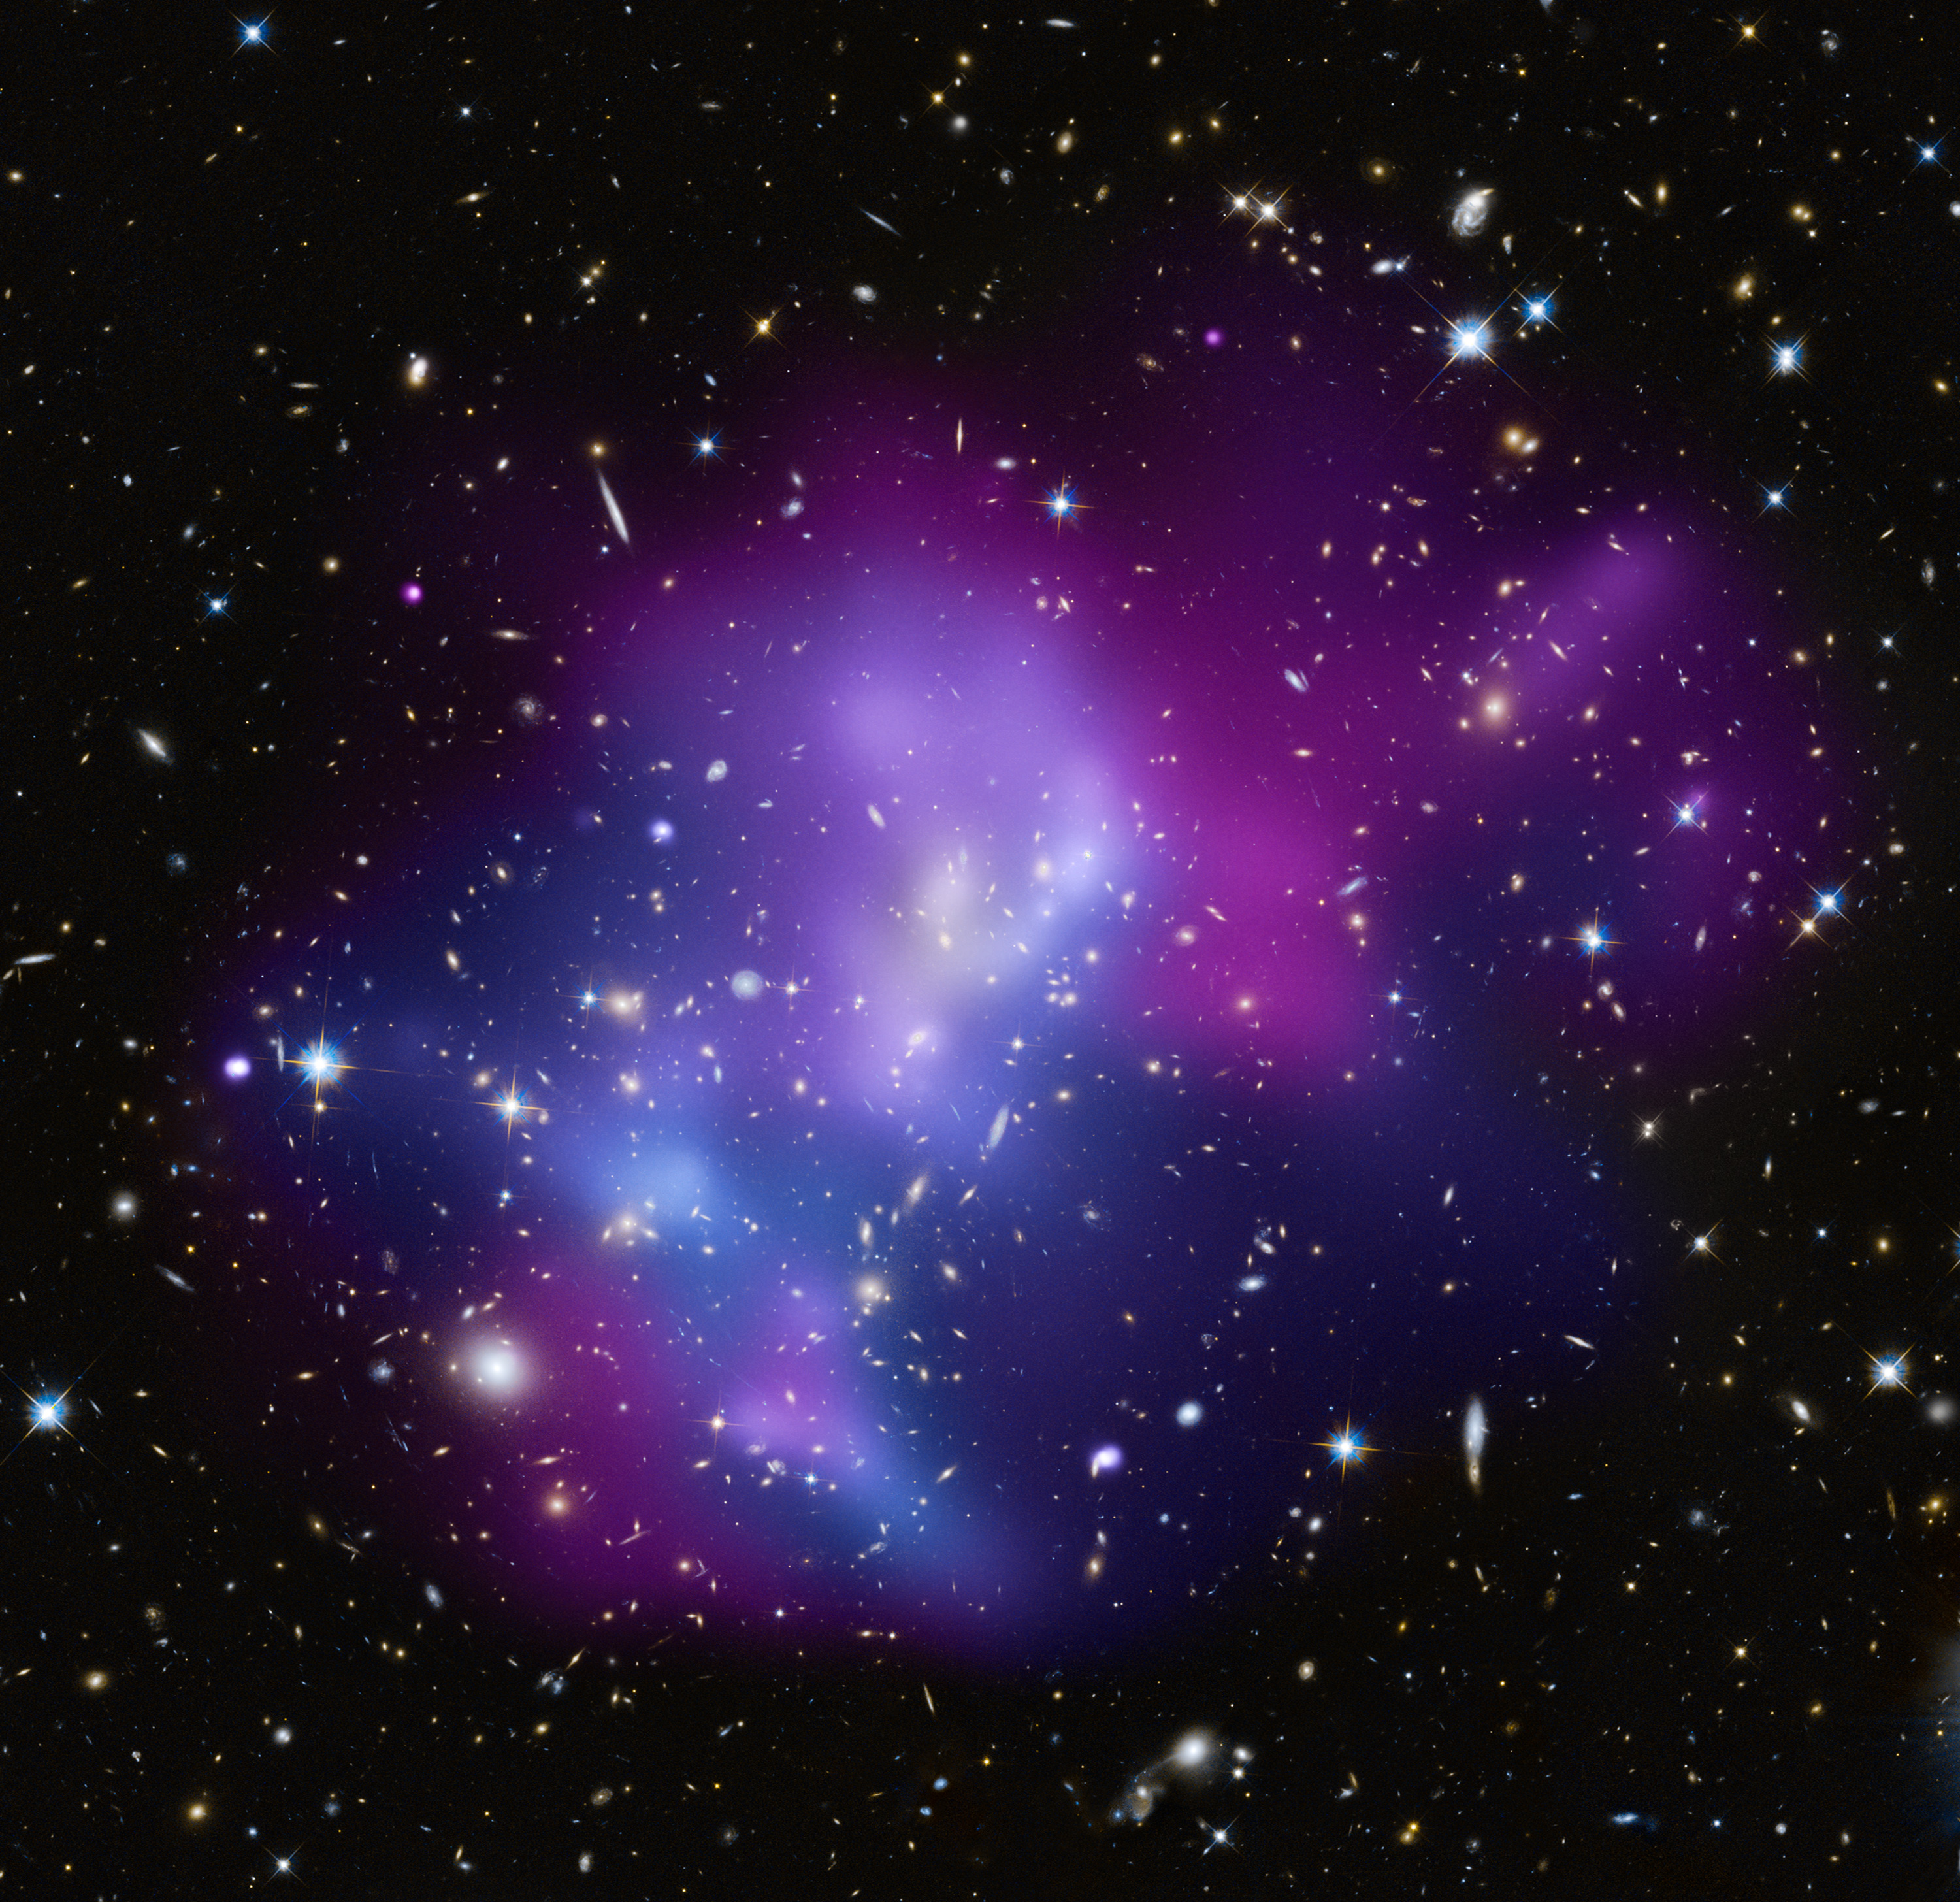 Galaxy cluster MACS J0717 | ESA/Hubble